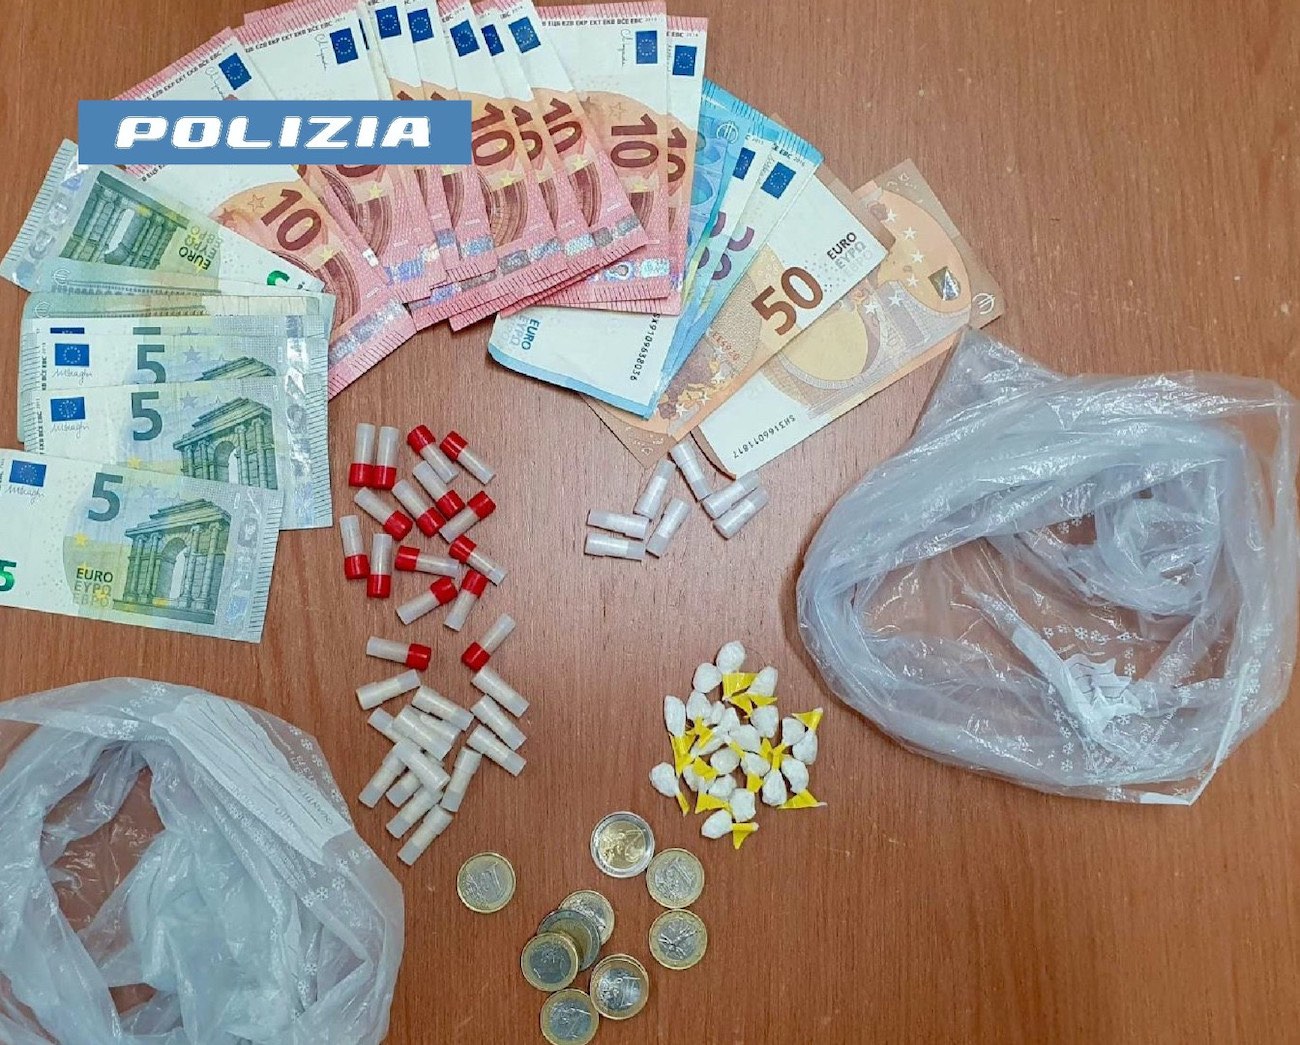 Scampia, market ambulante della droga in via Ghisleri: arrestato 23enne